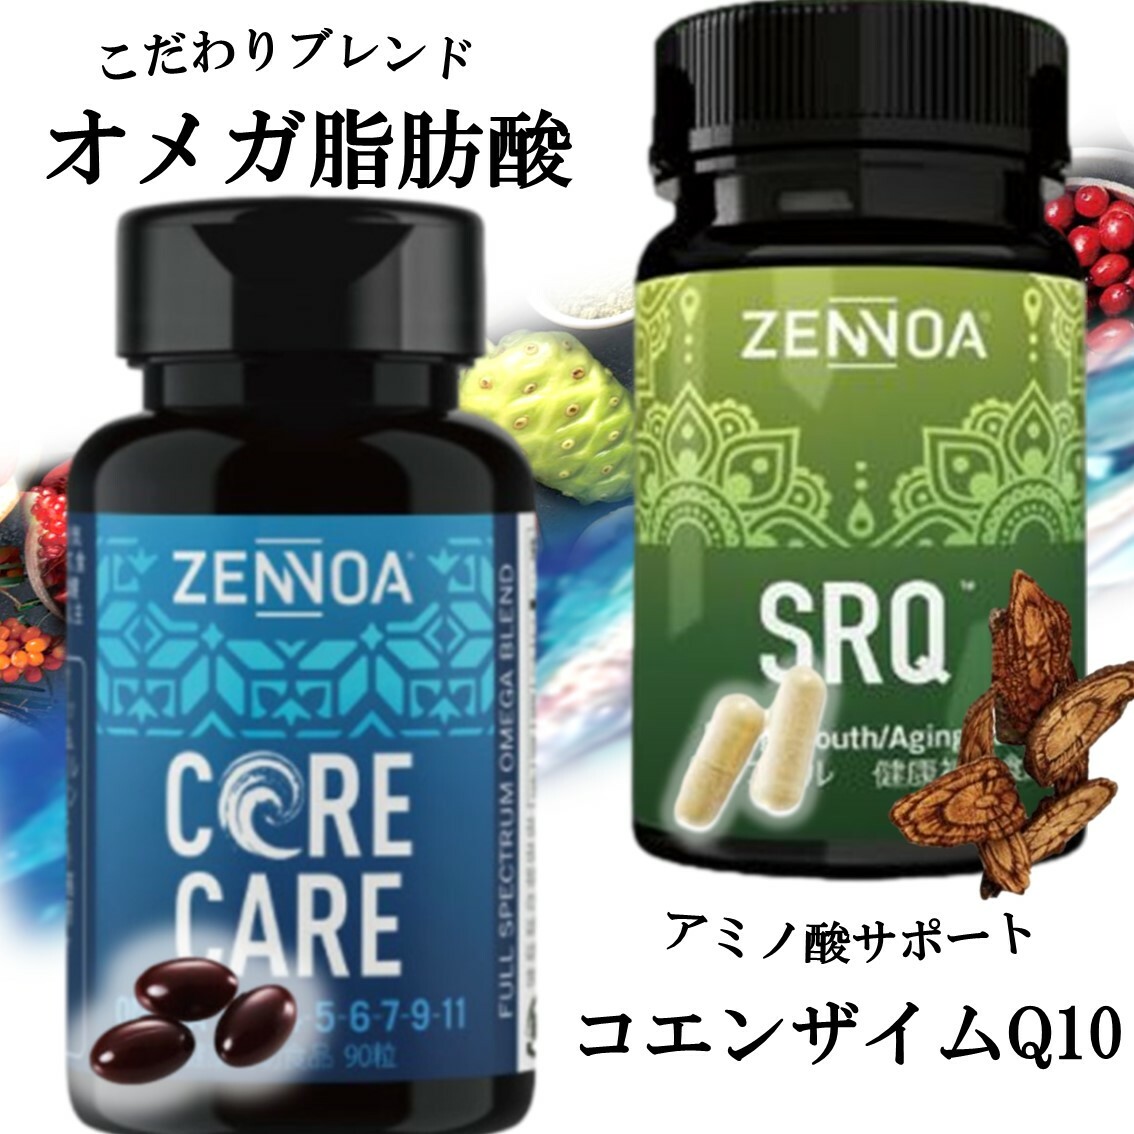 ゼンノア コアケア と SRQ のセット オメガ3 サプリ オメガ脂肪酸 サプリメント タラ肝油 中鎖脂肪酸 MCT スーパーフード コエンザイムQ10 サラシア アミノ酸 約30日分 ZENNOA  CORE CARE